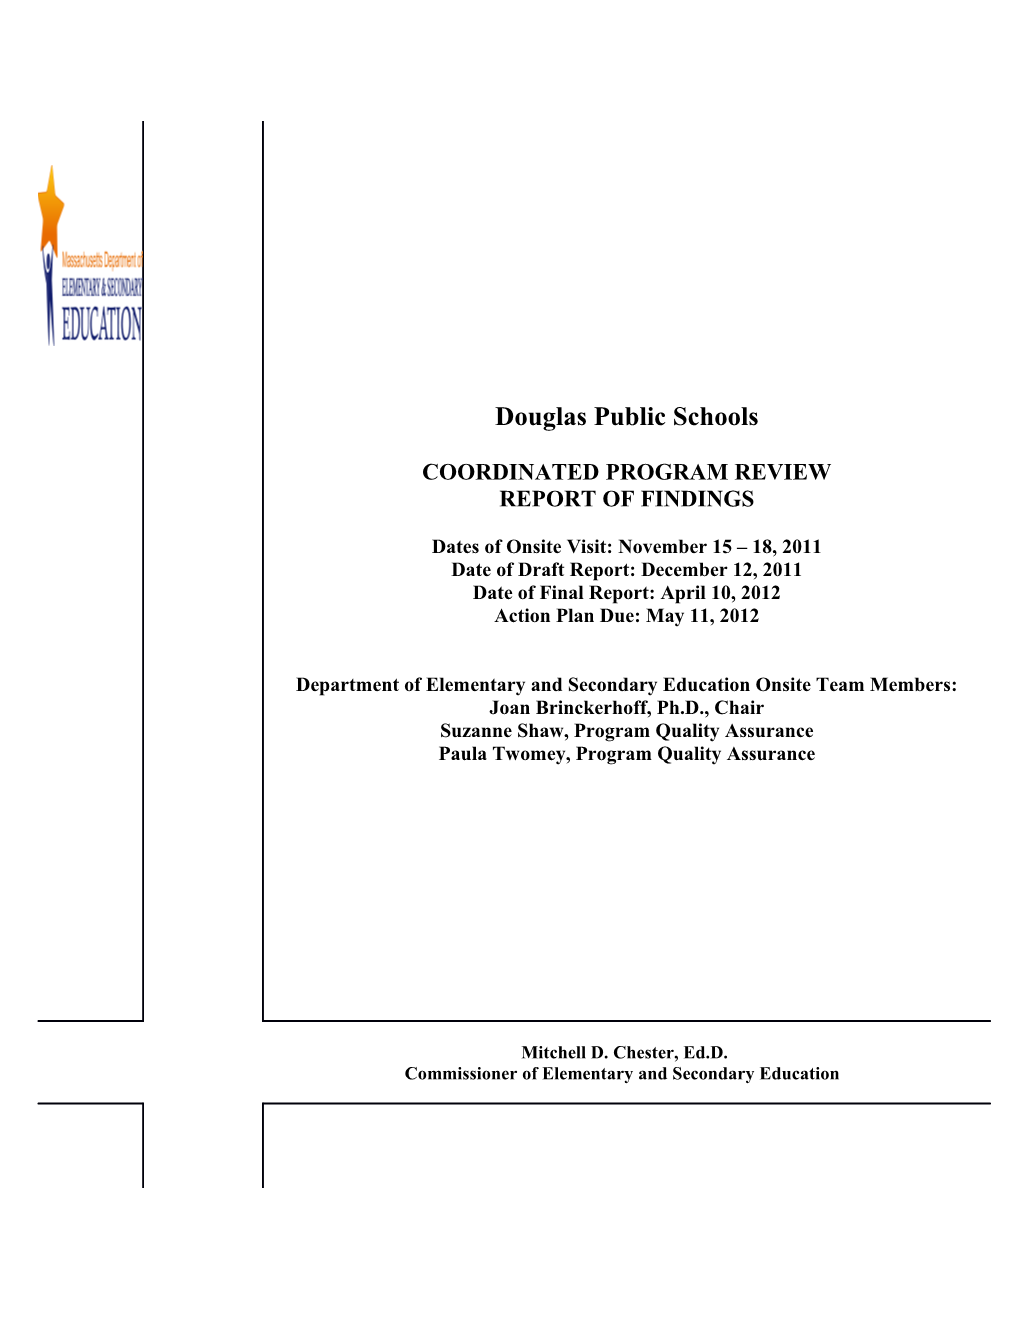 Douglas Public Schools Final Report 2012